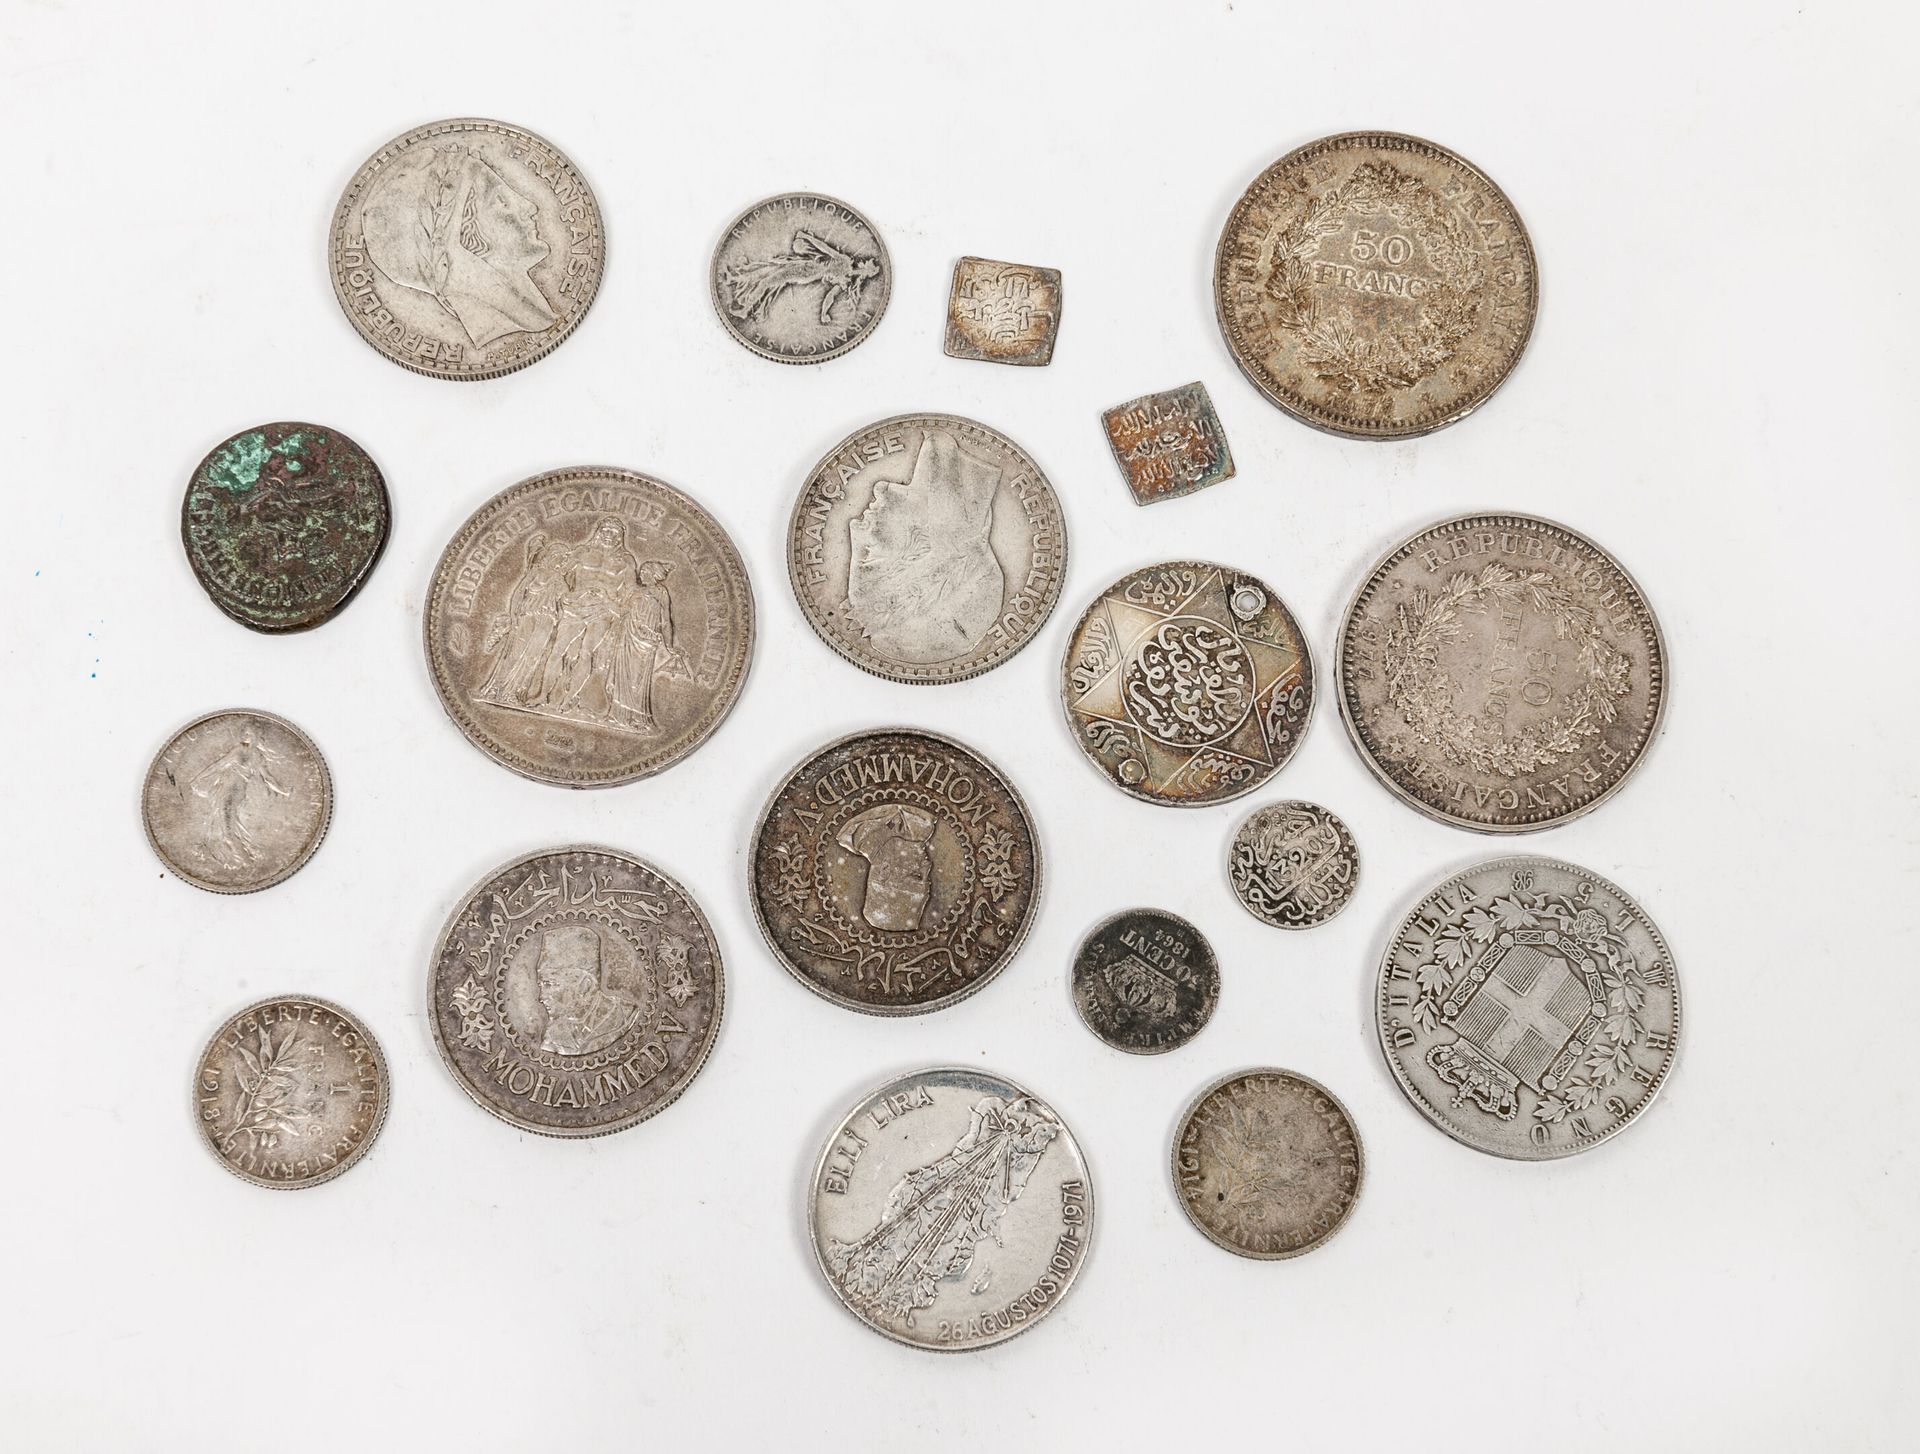 FRANCE et divers, XIXème siècle Lot de 18 monnaies en argent, dont :

- 10 franç&hellip;